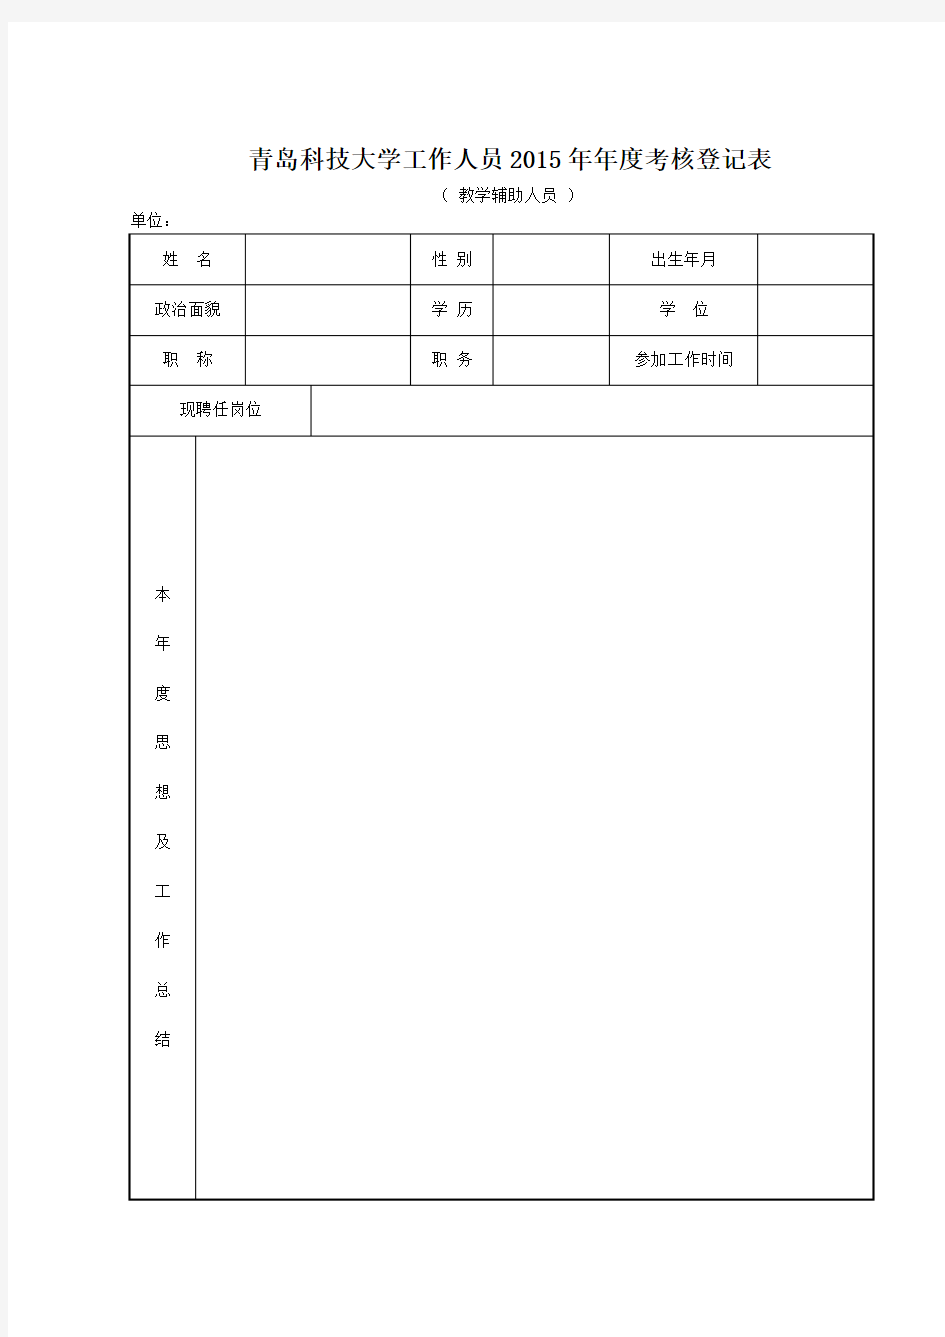 青岛科技大学工作人员2015年年度考核登记表